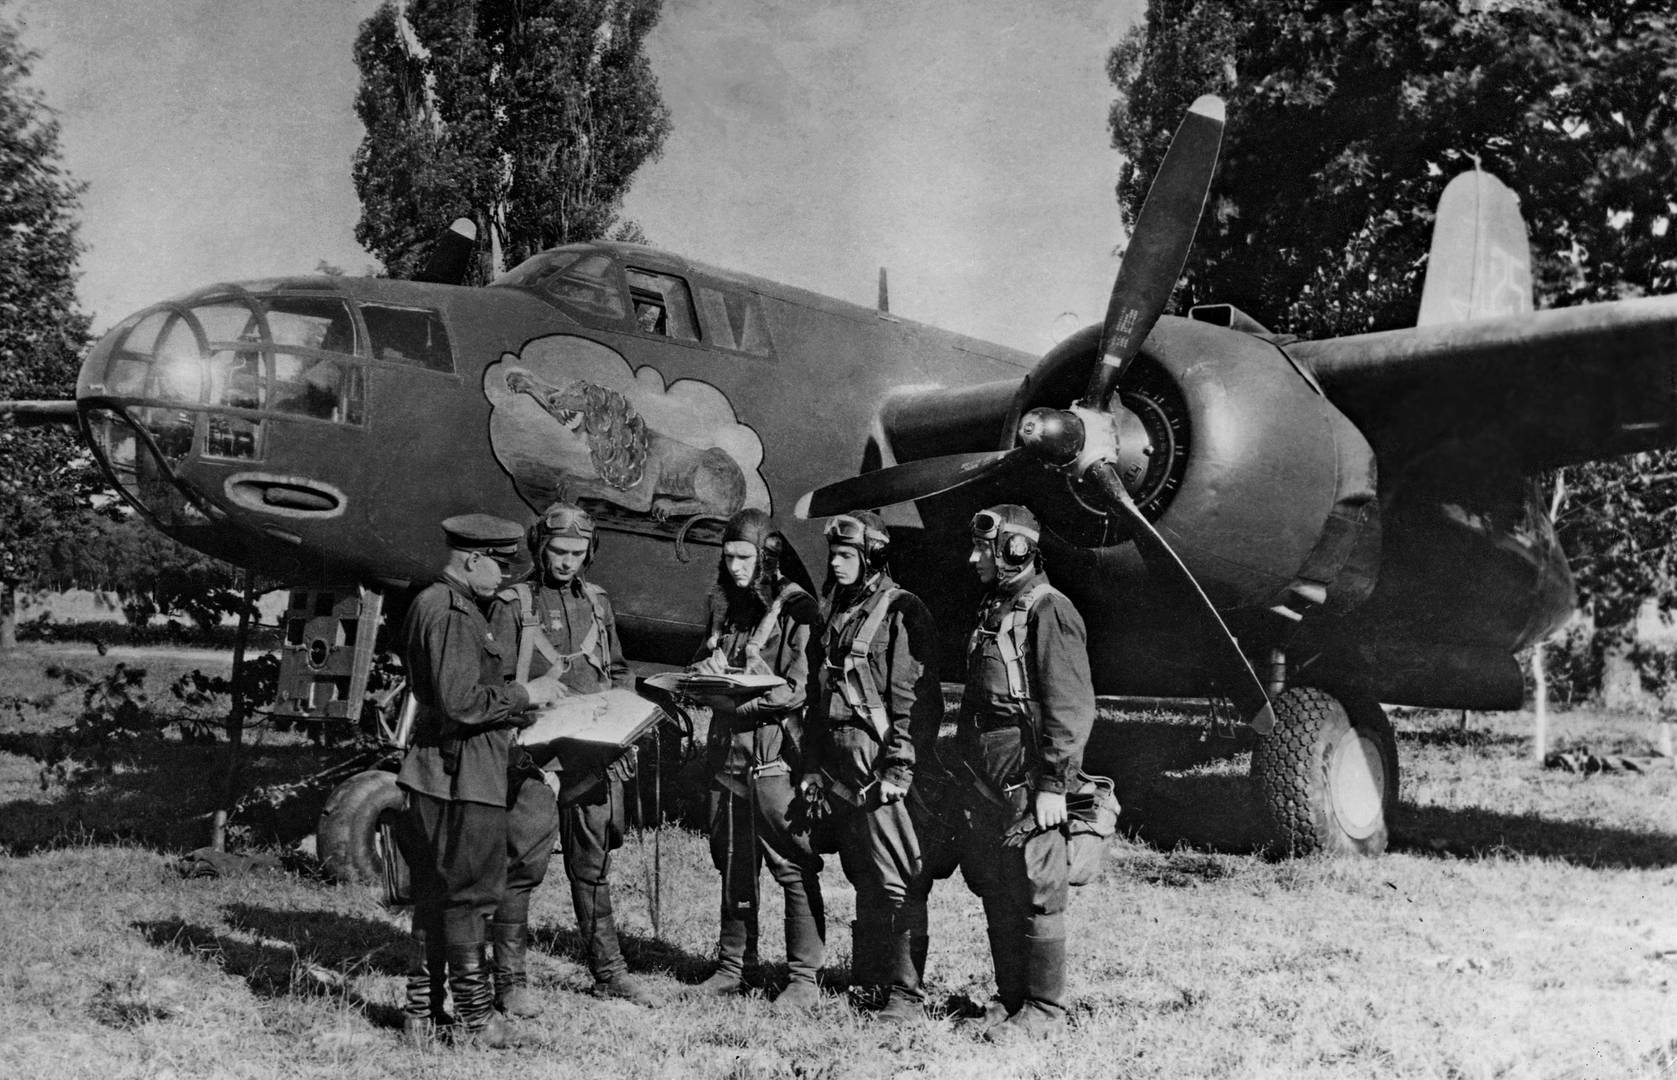 Постановка задачи экипажу бомбардировщика A-20B из состава 3-й эскадрильи 8-го ГБАП. 1-й Белорусский фронт. 1944